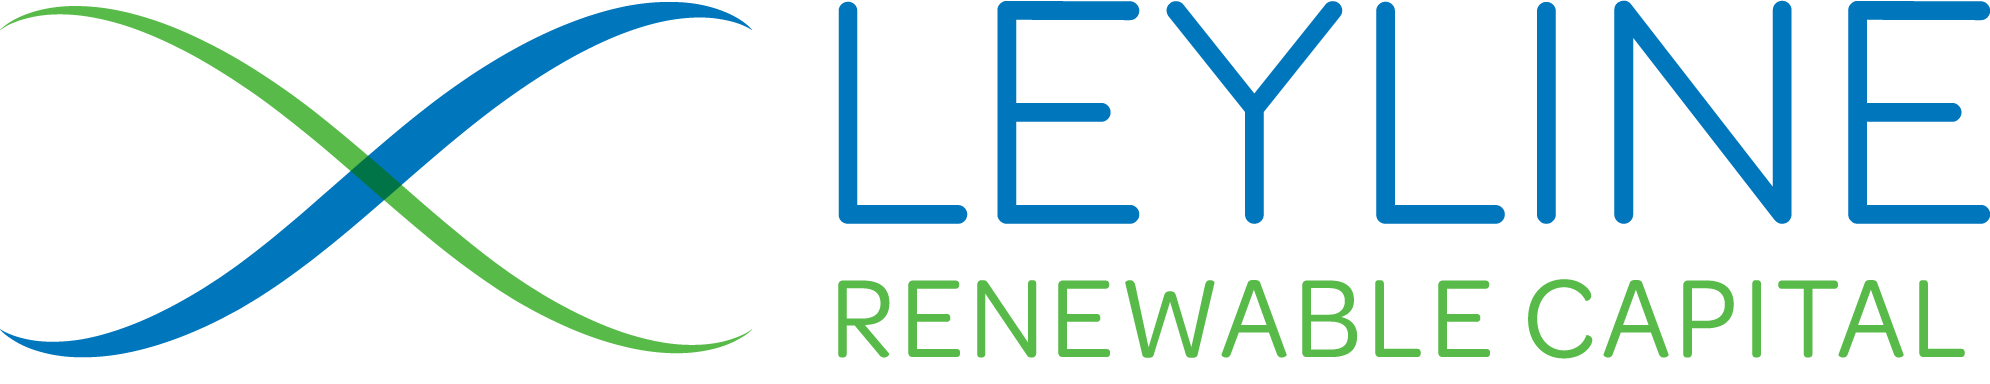 Leyline Renewable Capital Logo